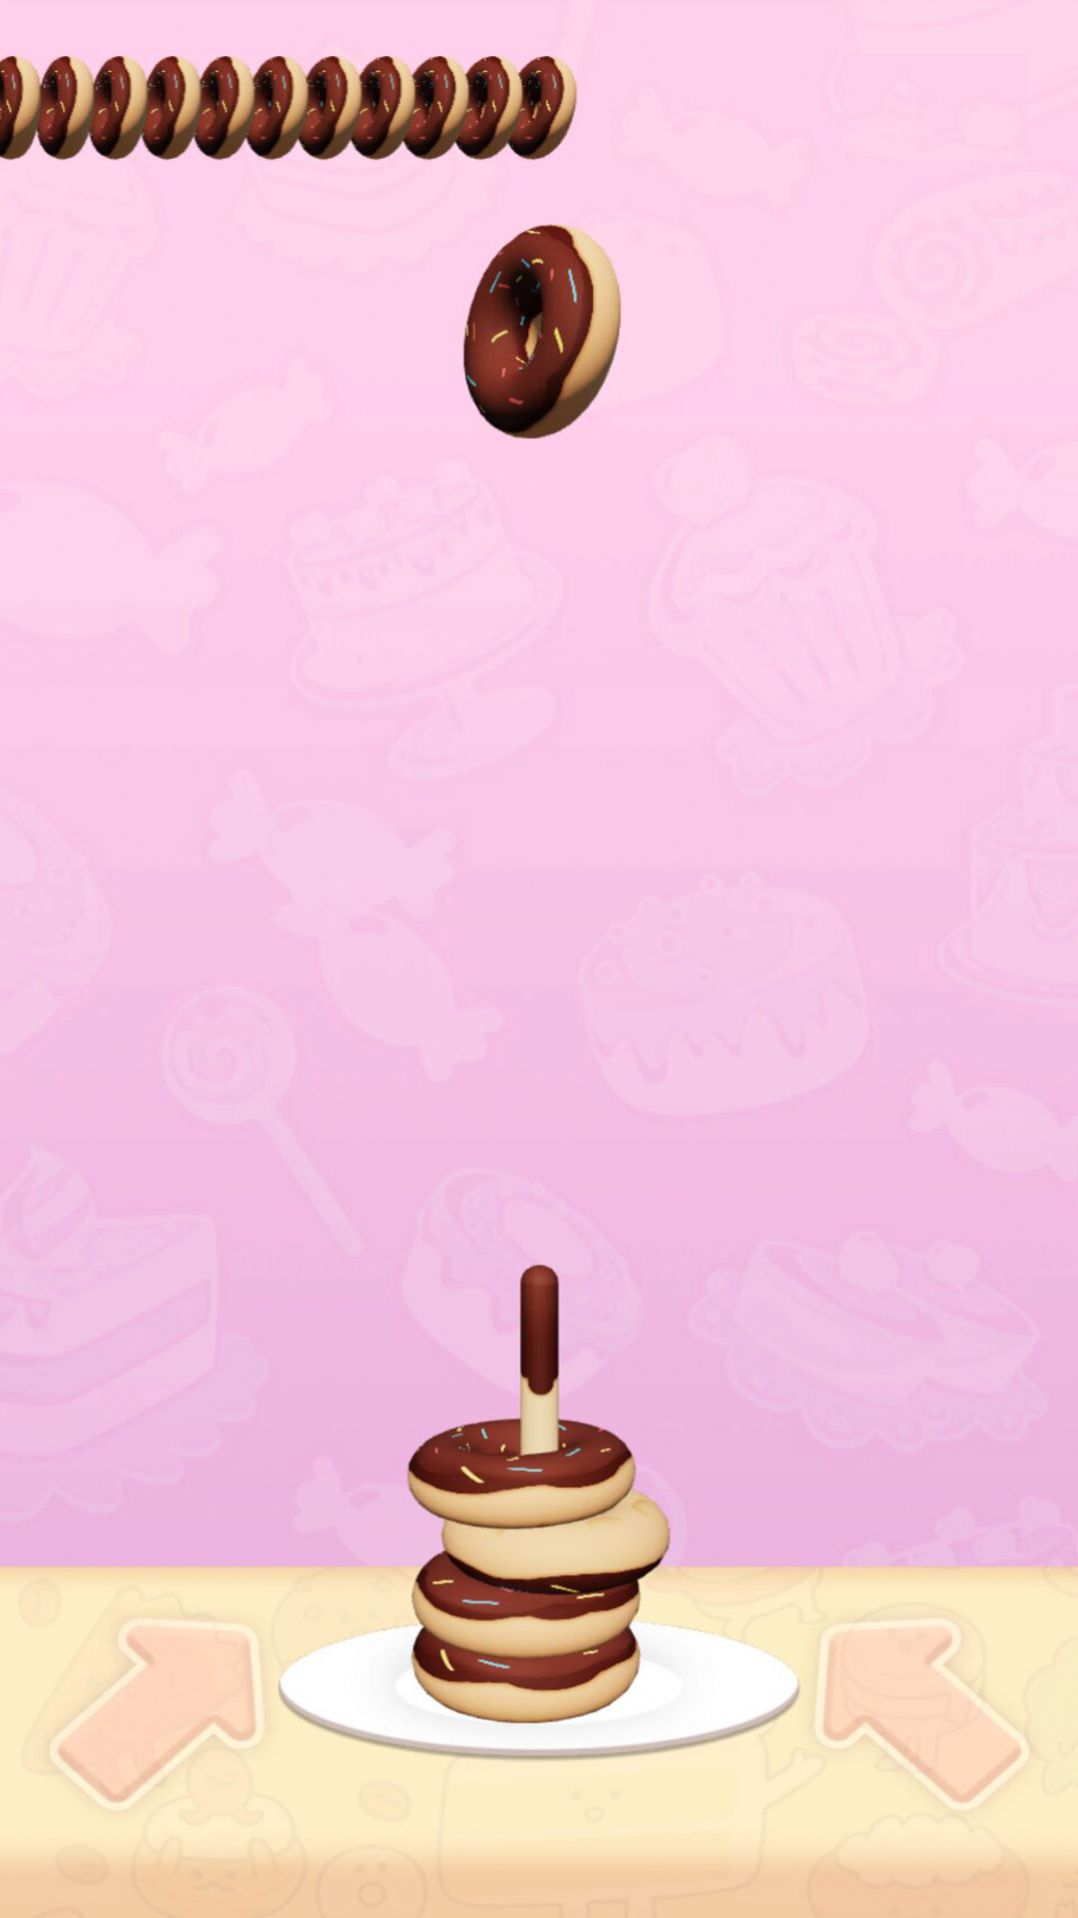 解压甜甜圈游戏安卓版 v1.0截图3